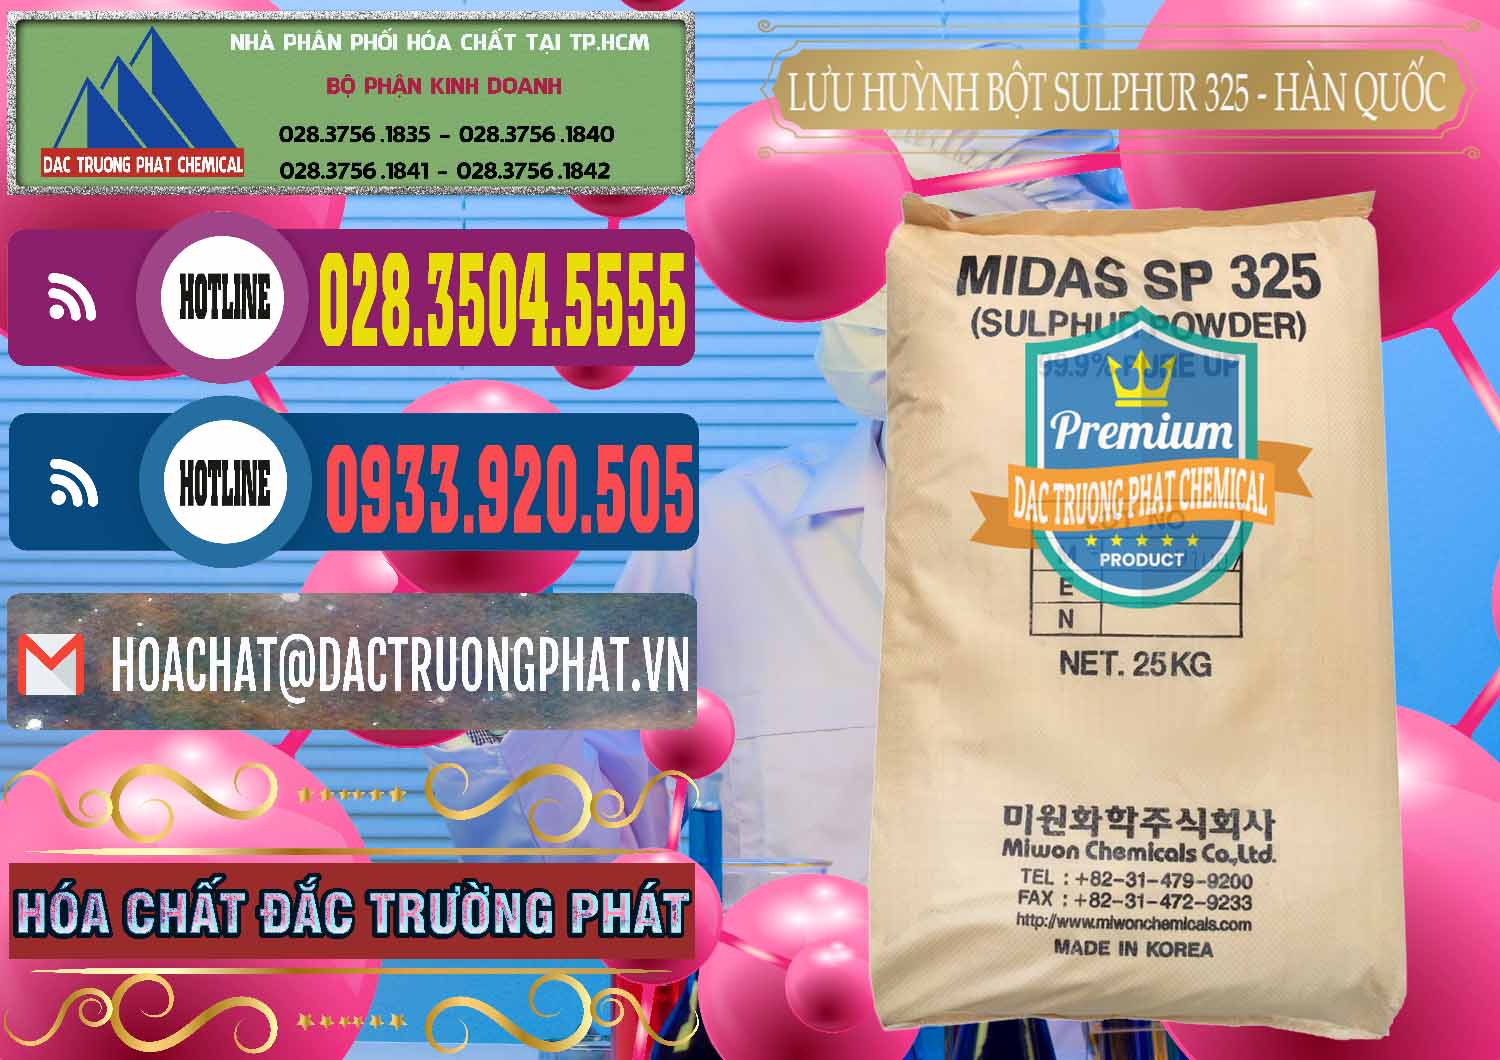 Nơi chuyên cung cấp ( bán ) Lưu huỳnh Bột - Sulfur Powder Midas SP 325 Hàn Quốc Korea - 0198 - Đơn vị chuyên kinh doanh & phân phối hóa chất tại TP.HCM - muabanhoachat.com.vn